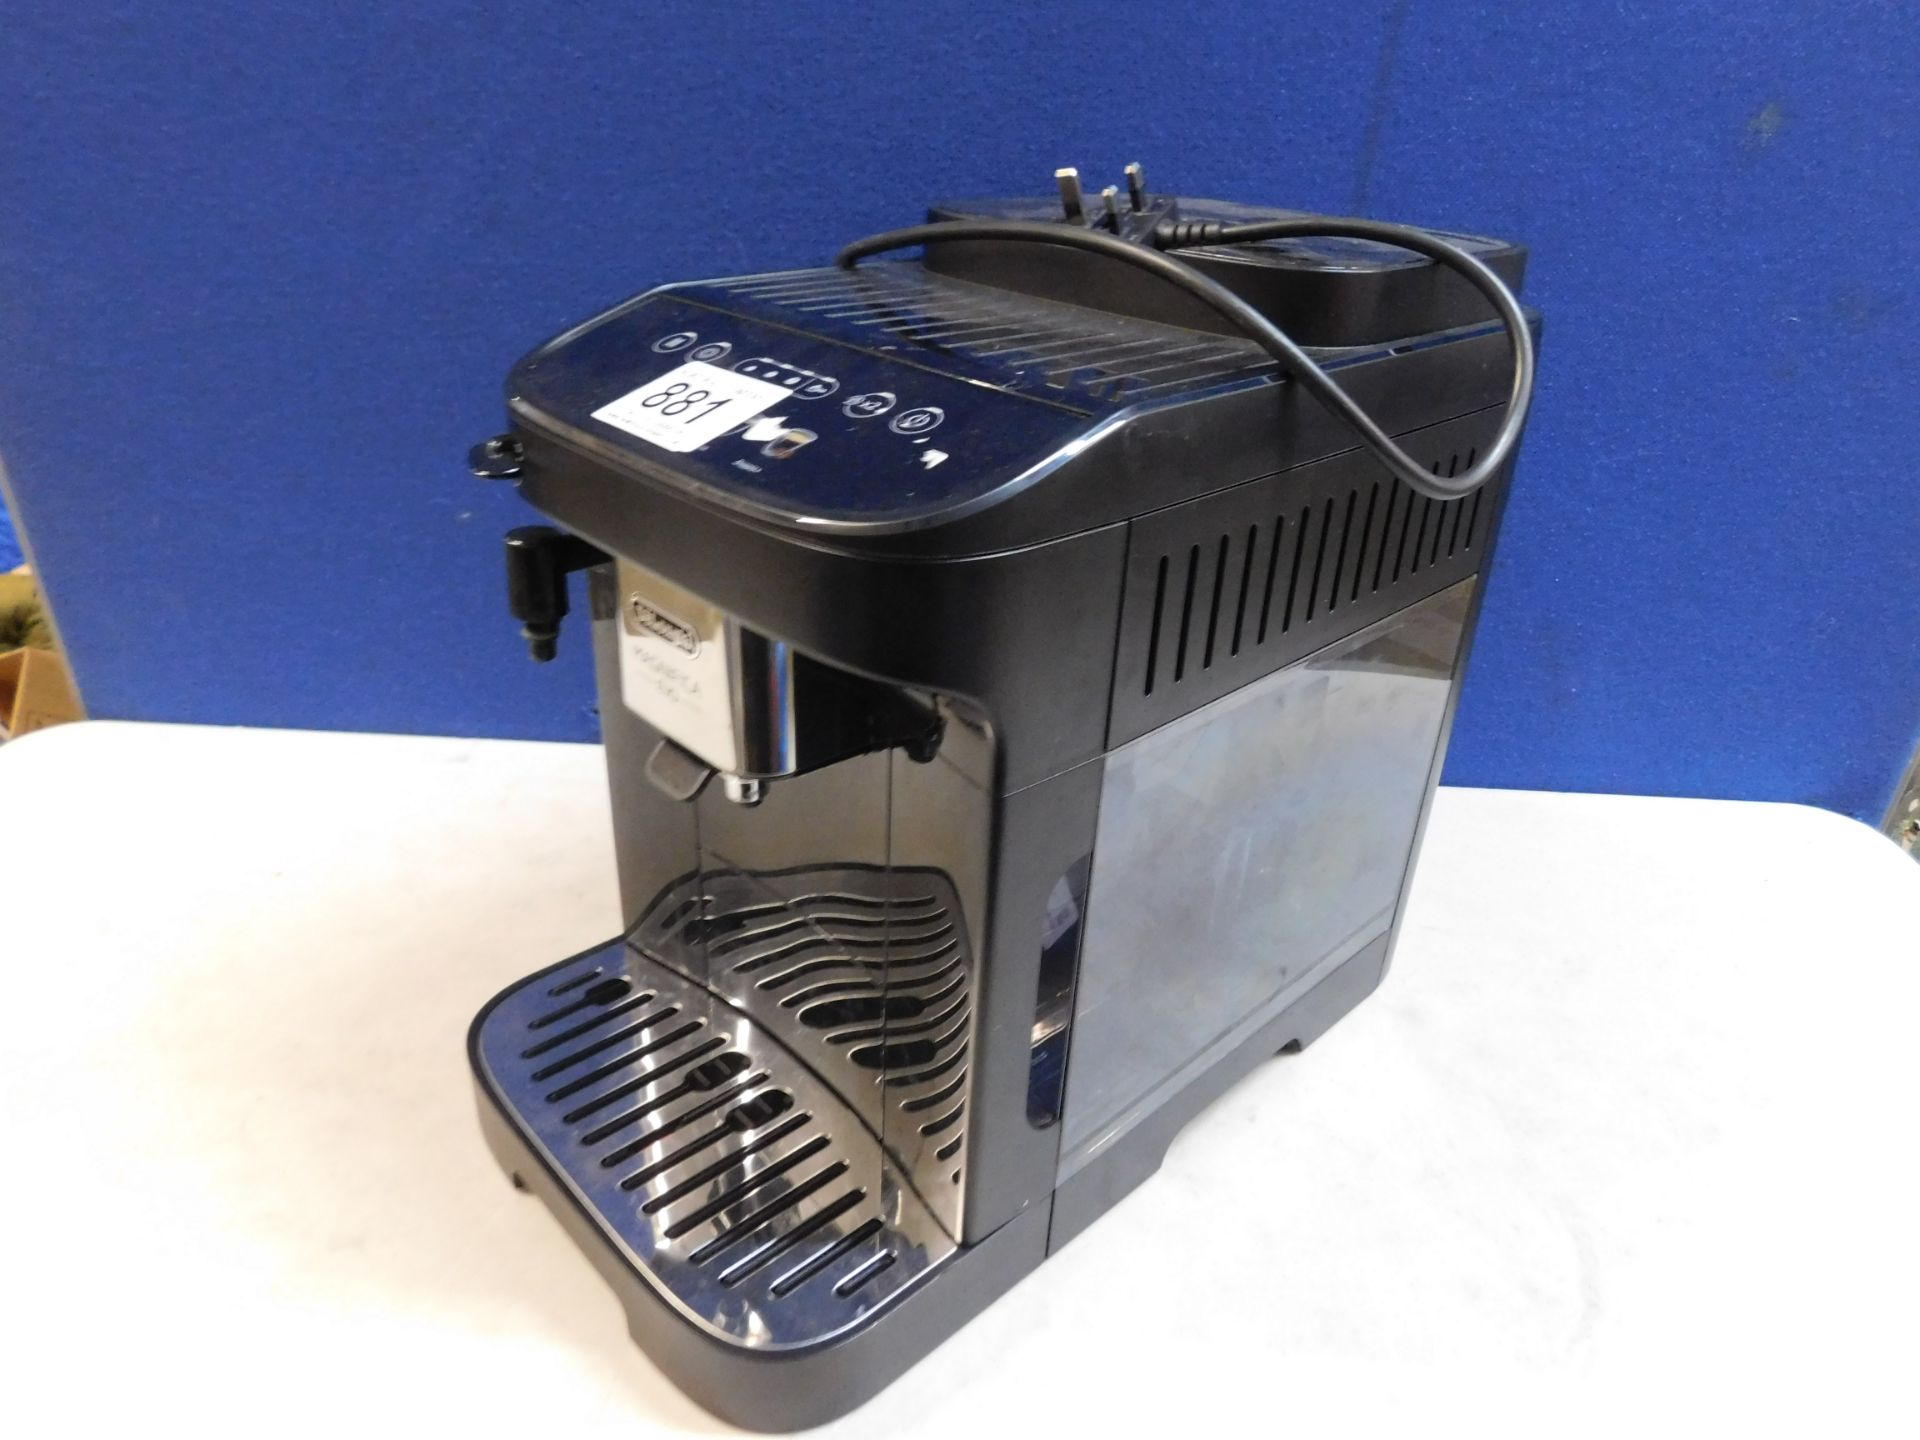 1 DE'LONGHI MAGNIFICA ECAM290.22.B EVO FULLY AUTOMATIC BEAN-TO-CUP COFFEE MACHINE RRP Â£499